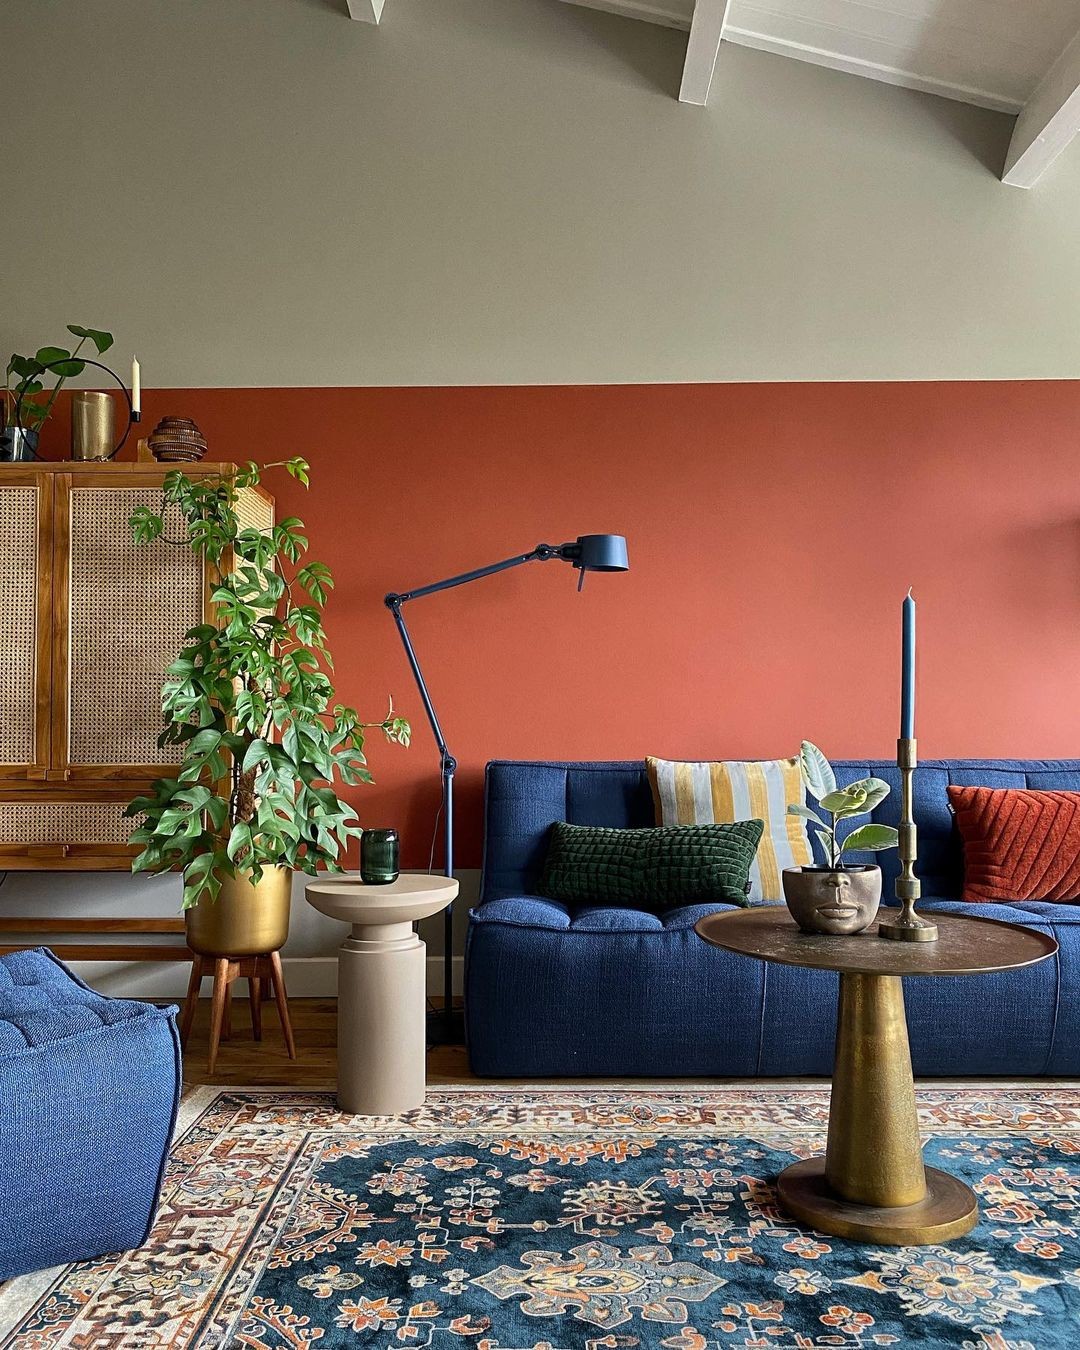 Décor do dia: sala de estar com sofá azul e meia parede pintada (Foto: Instagram)